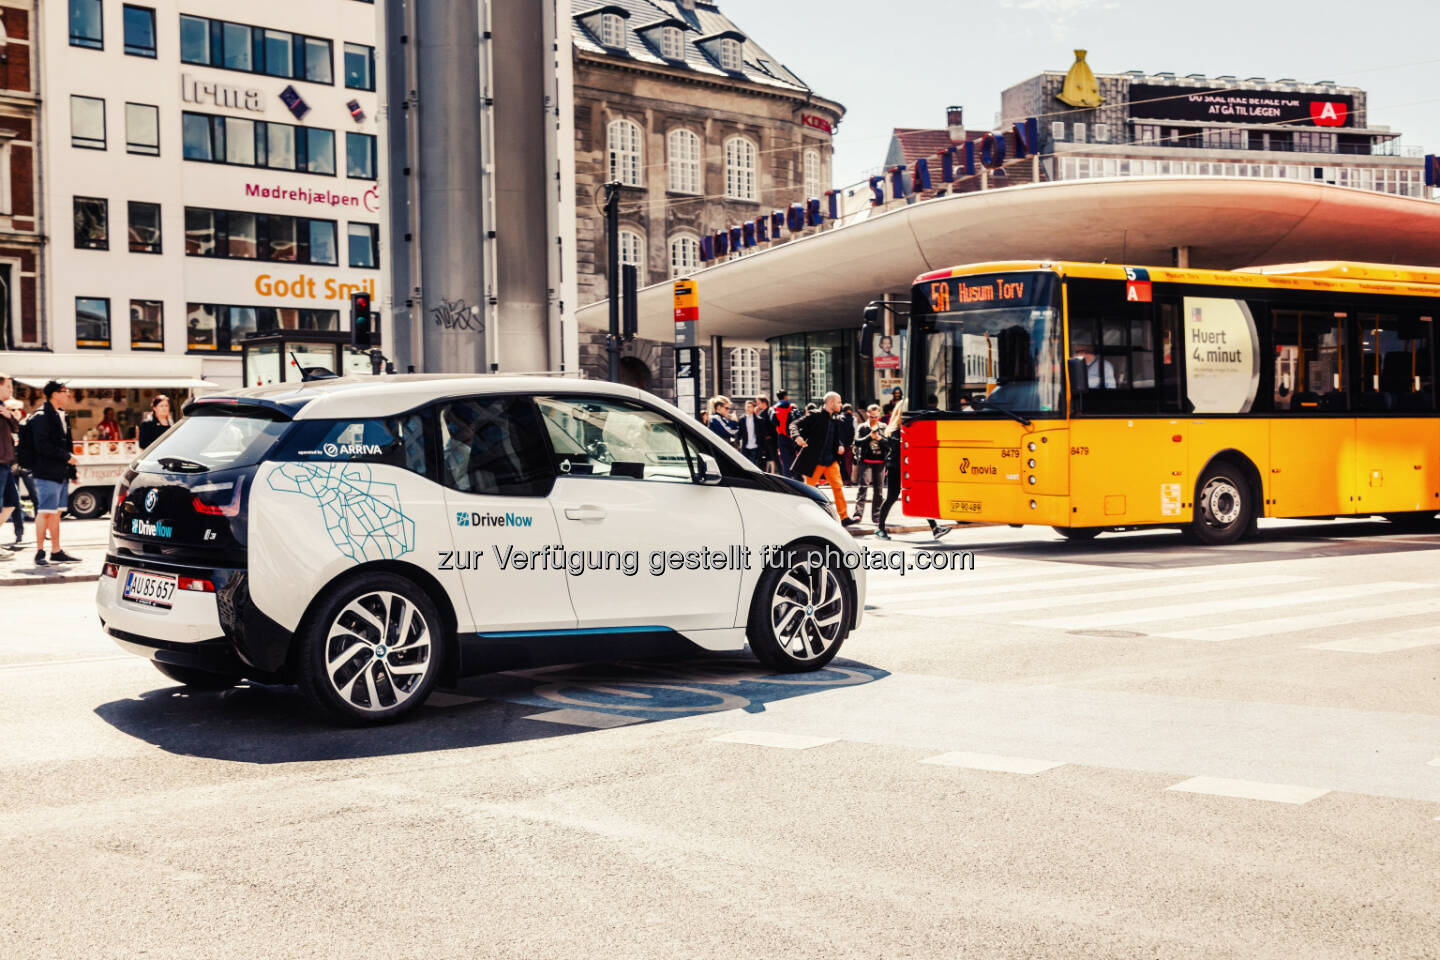 Vierhundert BMW i3 für vernetzte Mobilität in Kopenhagen. BMW i unterstützt die Verbesserung der Lebensqualität in Städten; Elektrisches Carsharing als Schlüsselkomponente; DriveNow mit dem BMW i3 in Kürze auch in Kopenhagen, direkt vernetzt mit dem öpnv:  © BMW Group